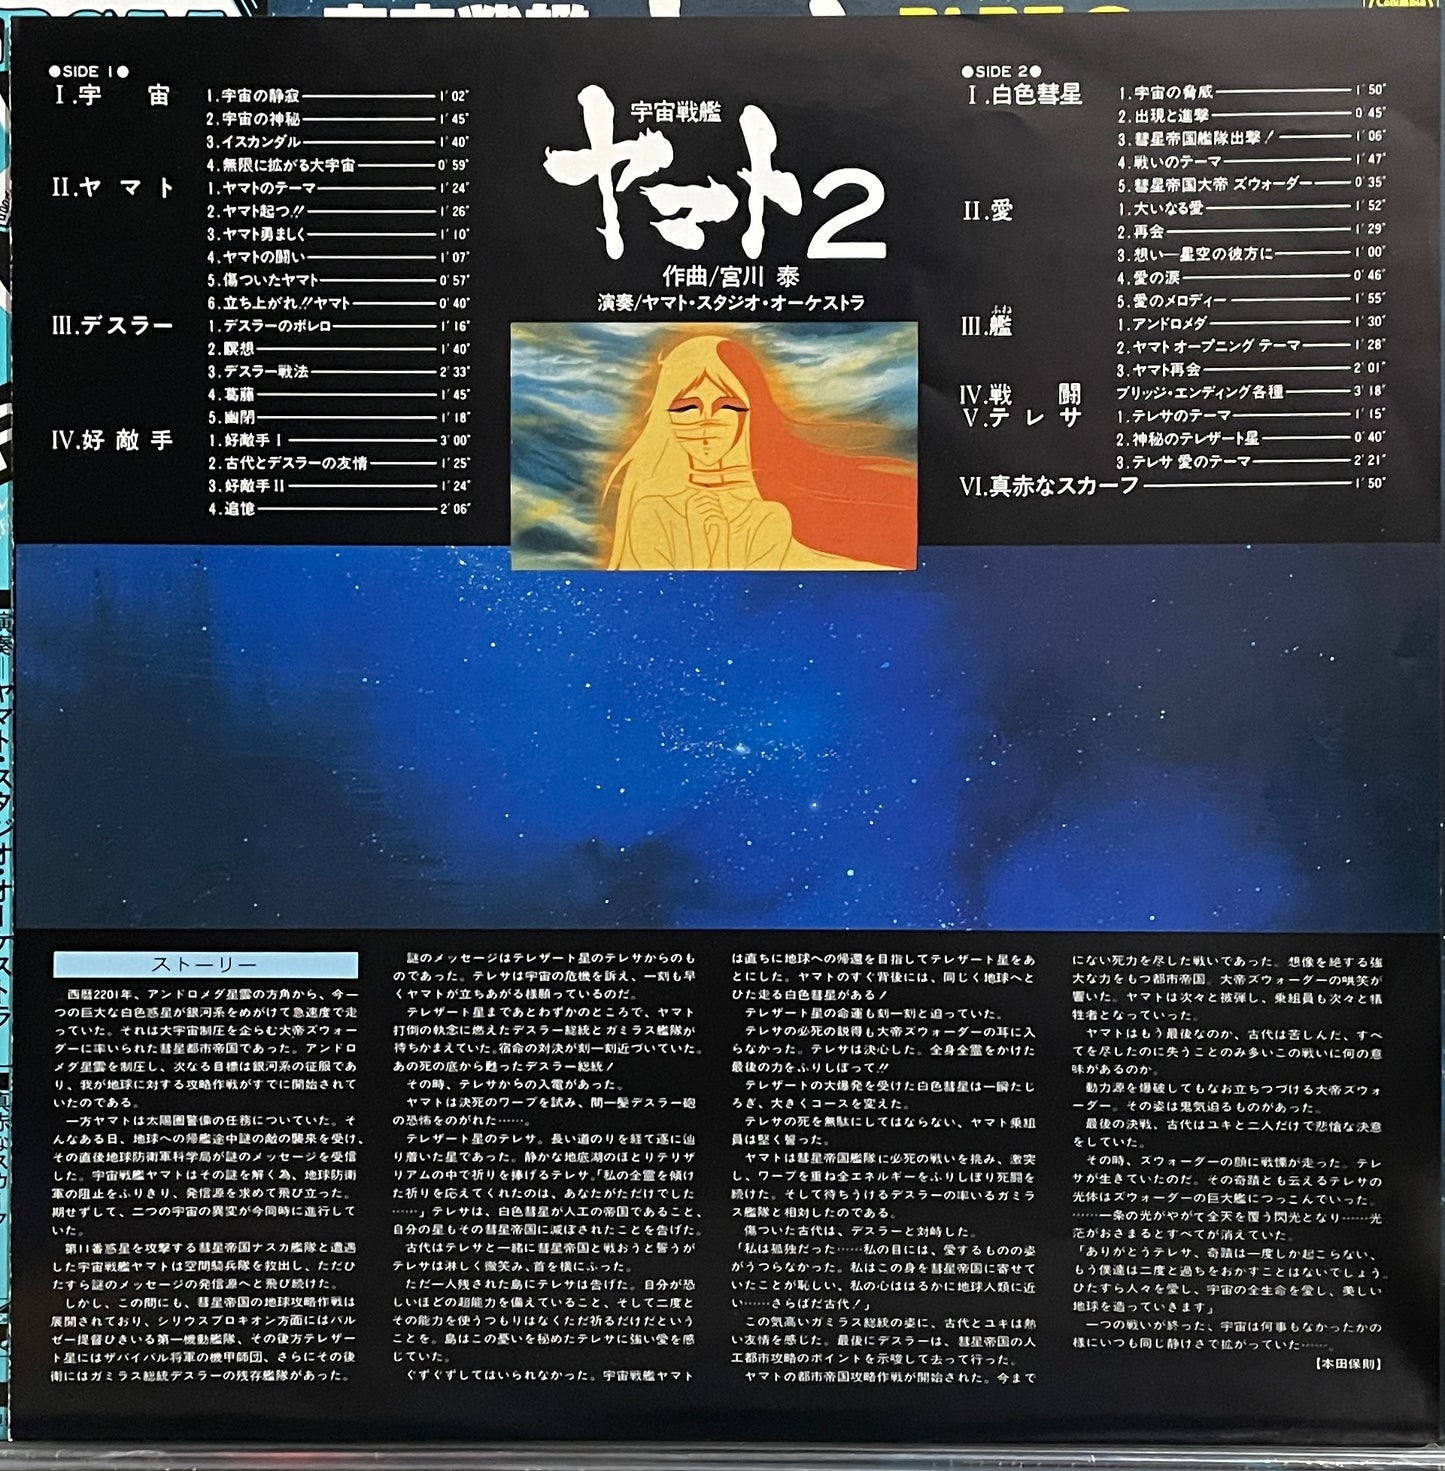 宇宙戦艦ヤマト Part 2 BGM (1981)